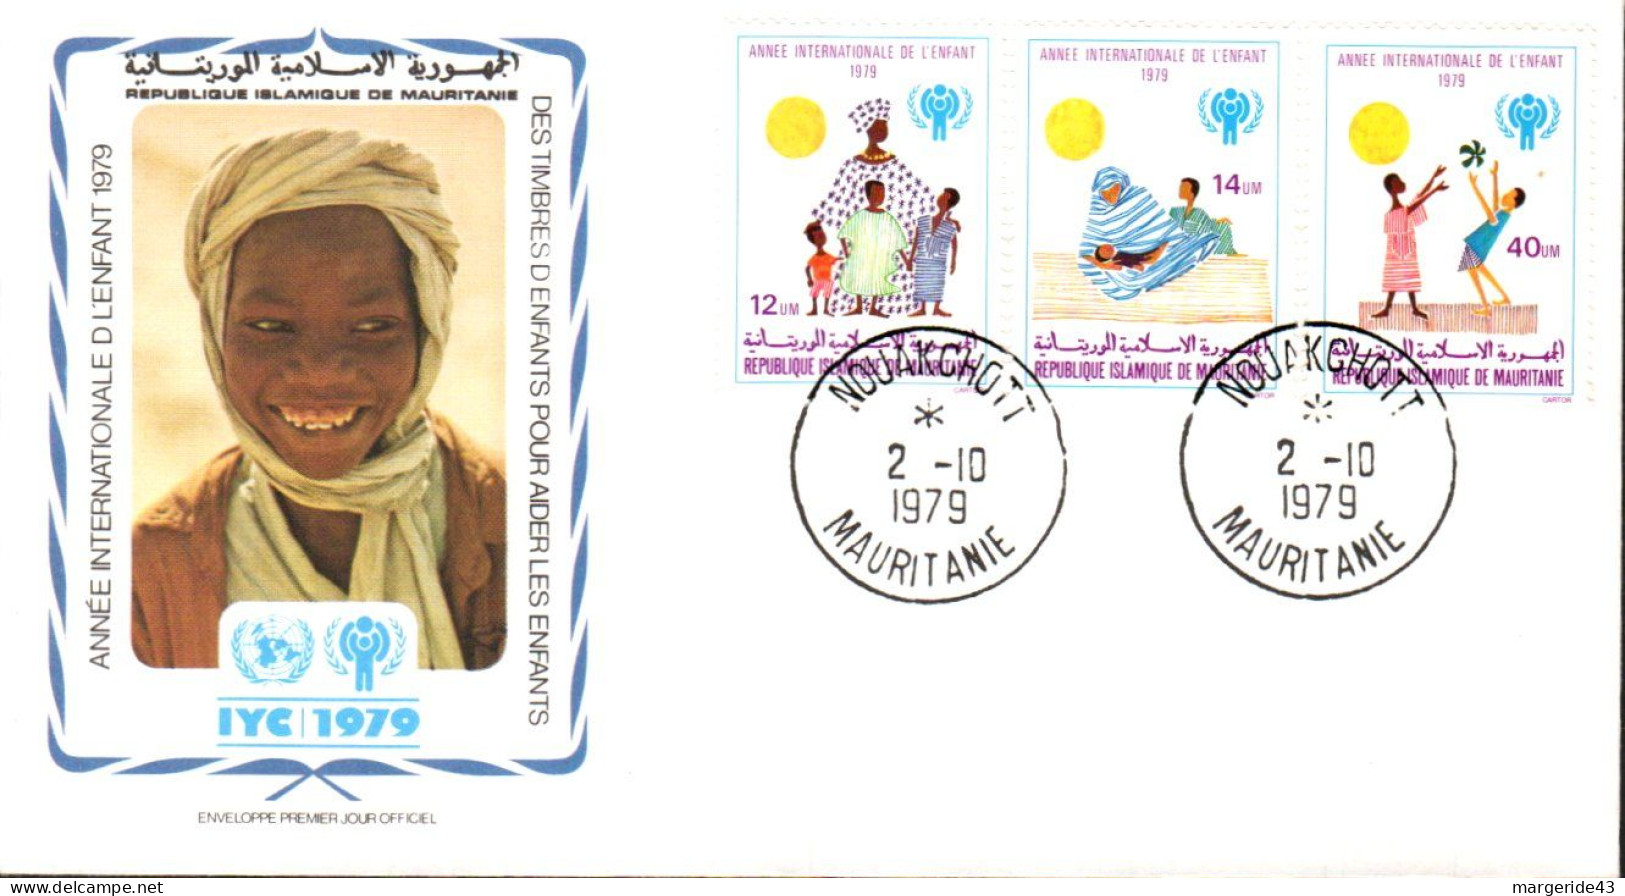 MAURITANIE FDC 1979 ANNEE DE L'ENFANT UNICEF - Mauretanien (1960-...)